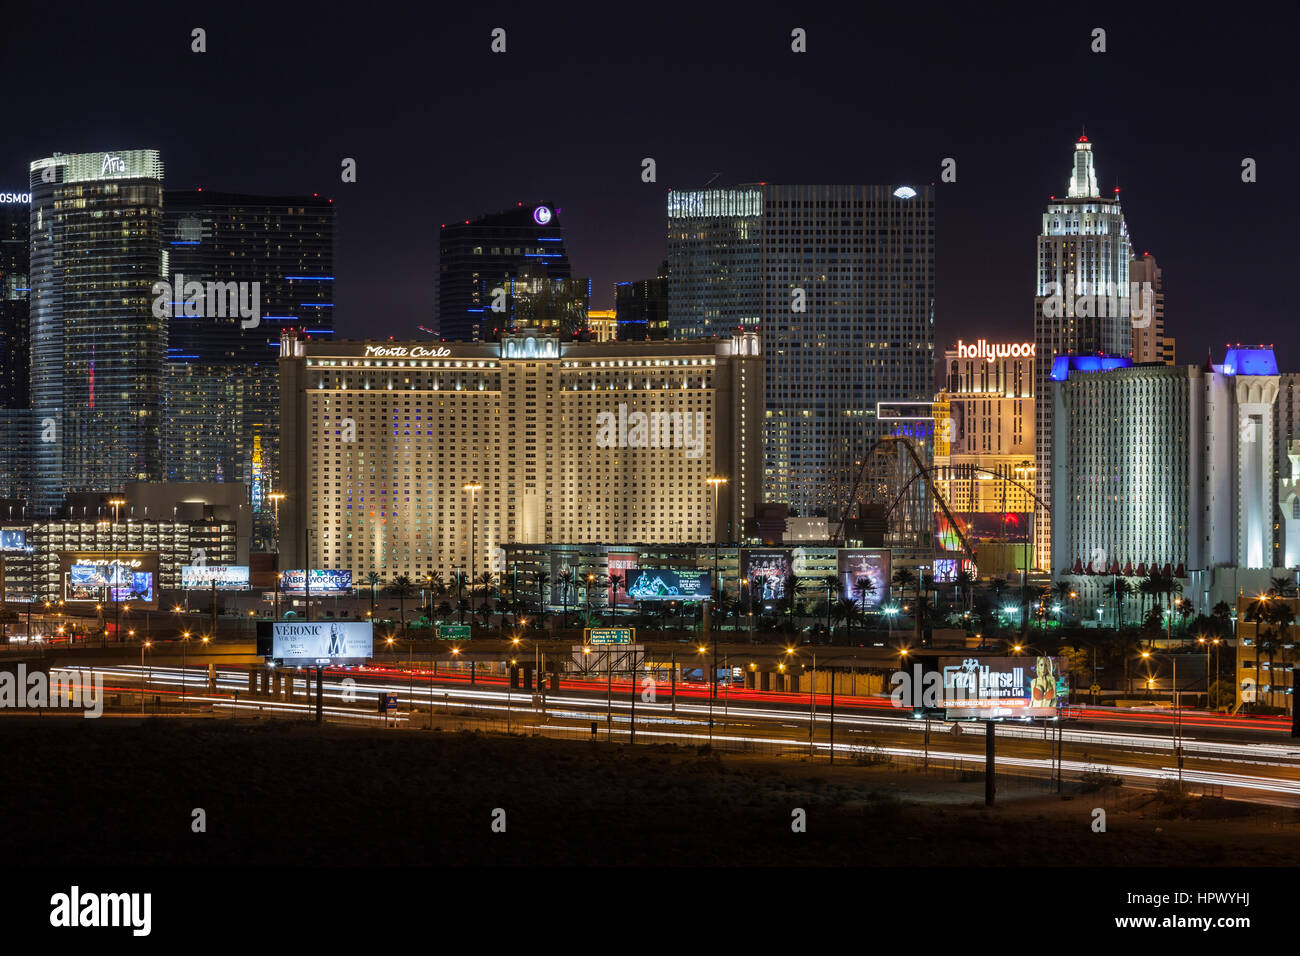 La opinión editorial de Las Vegas casino resorts y tráfico nocturno conduciendo a Las Vegas strip. Foto de stock